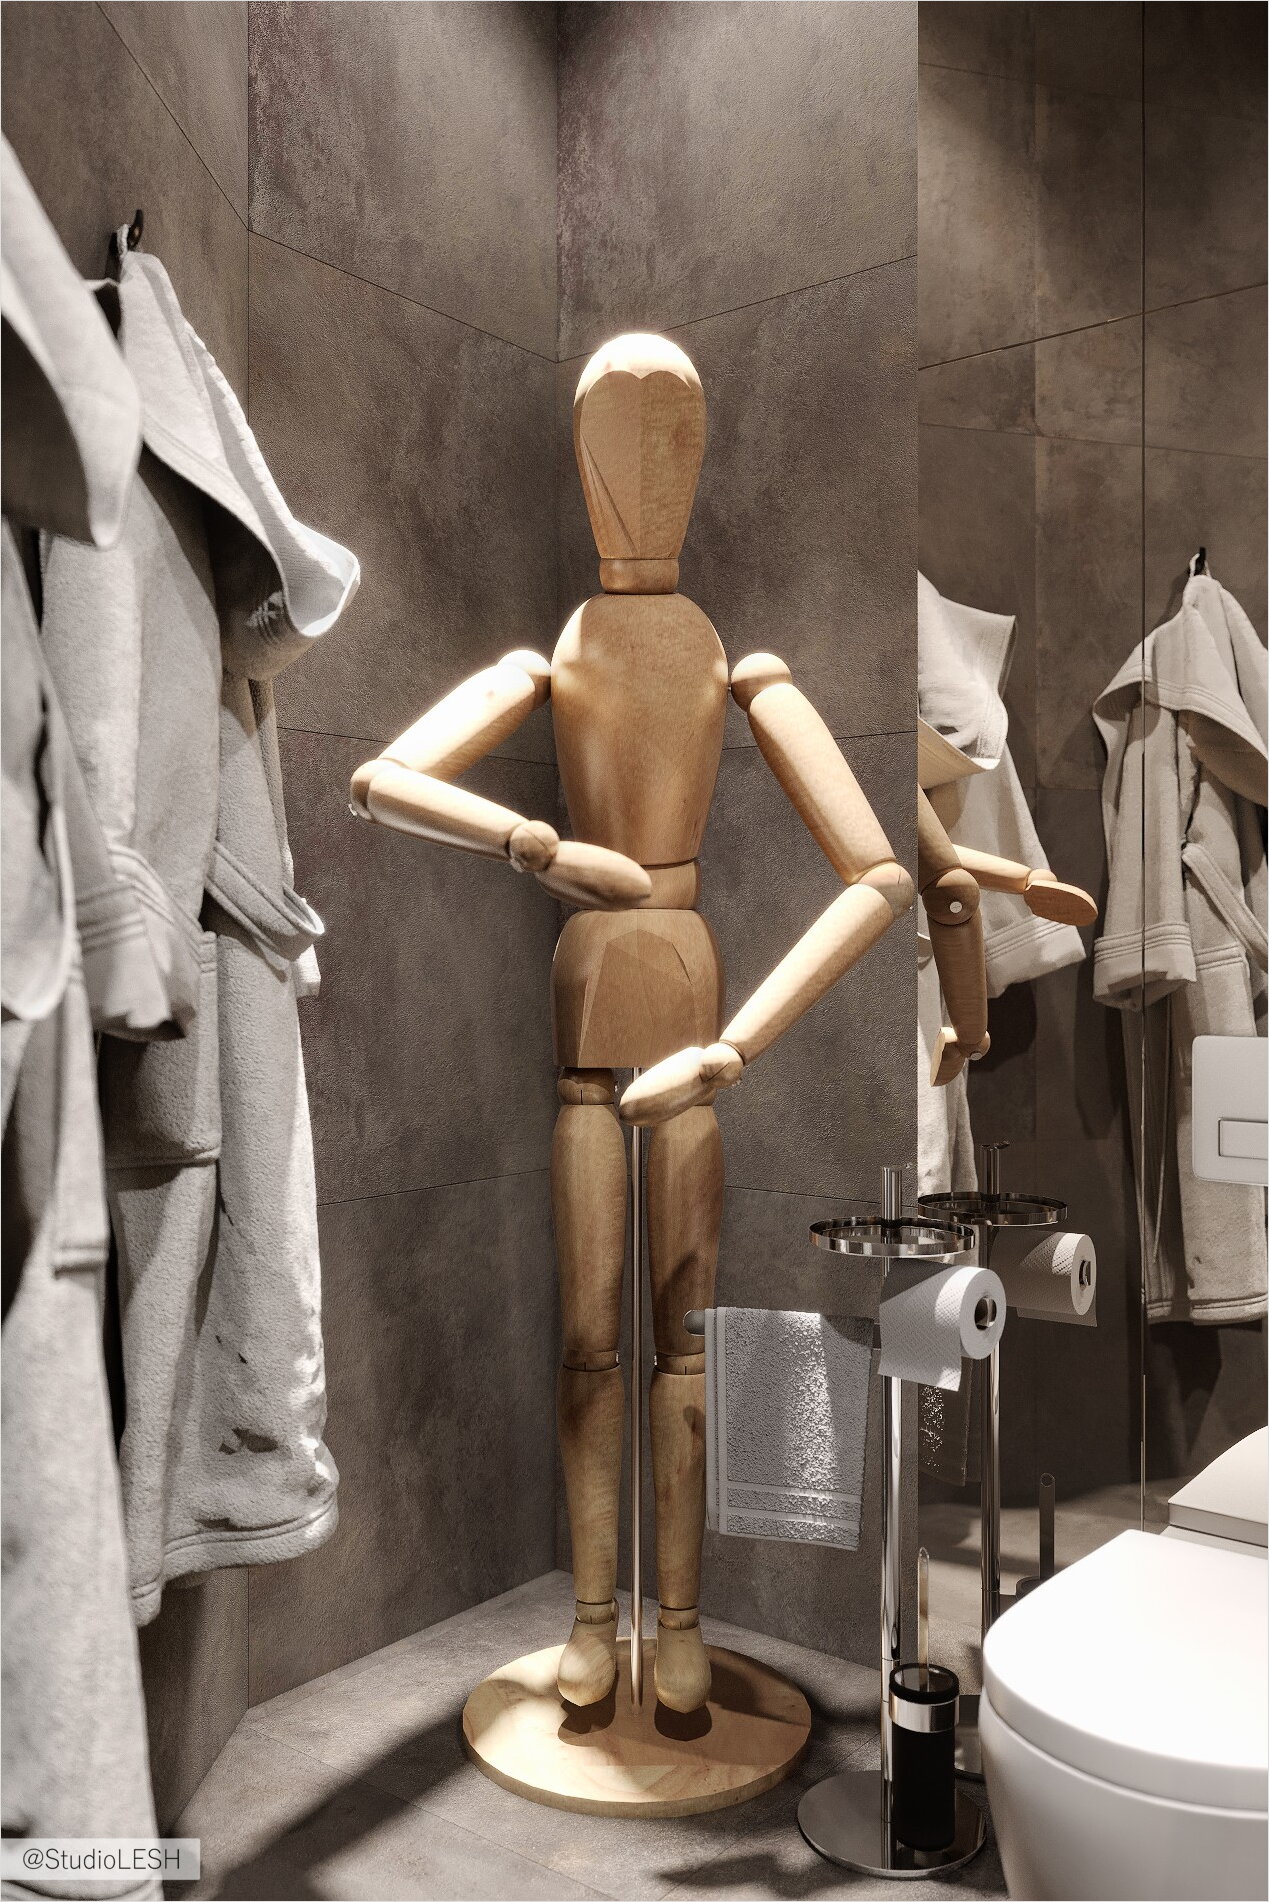 Скульптуры деревянного человечка из IKEA в полный рост